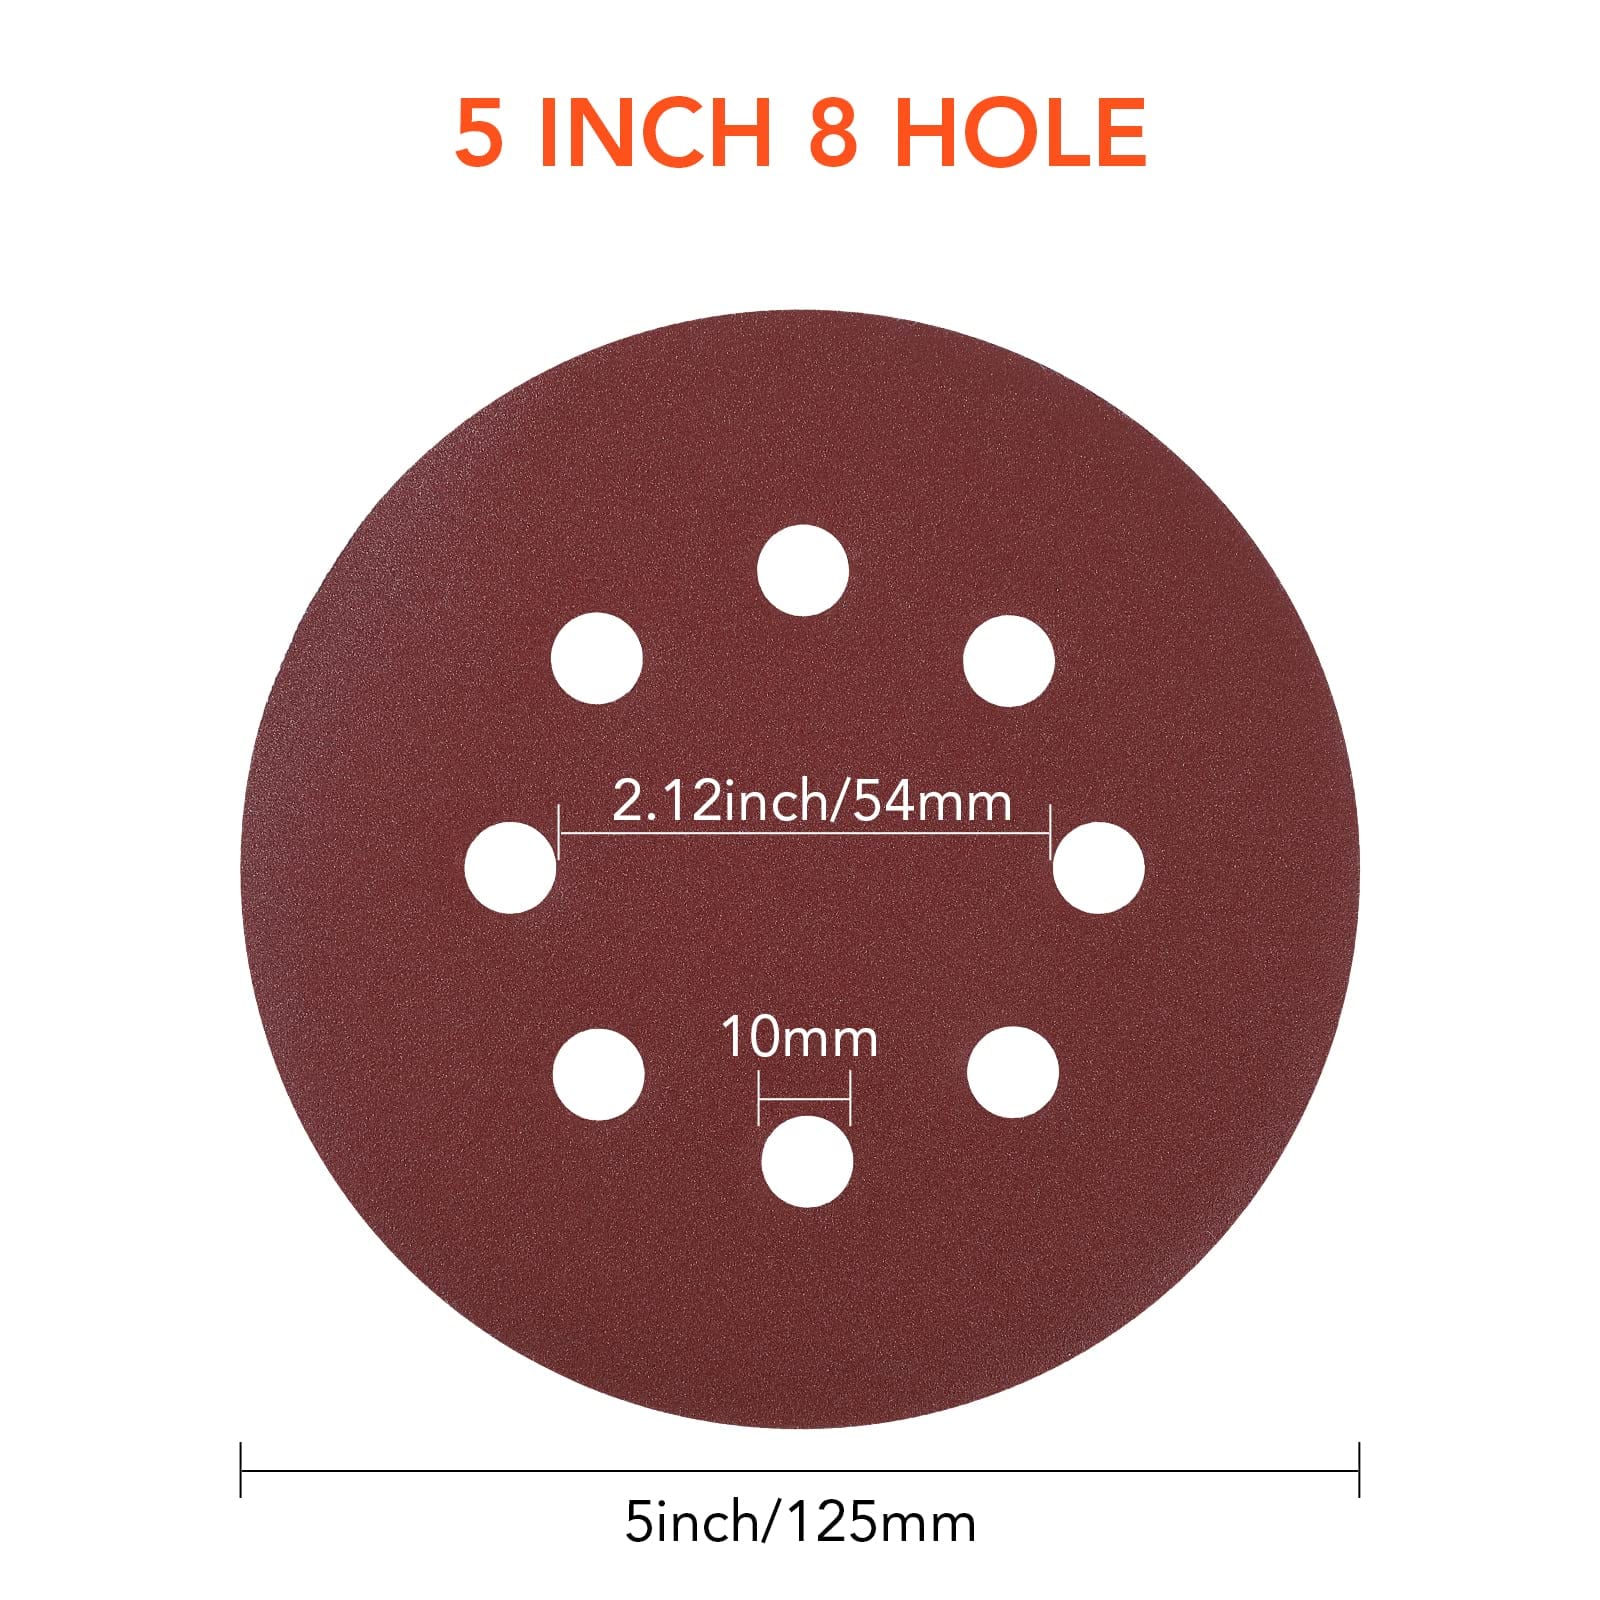 8-Hole Hook-and-Loop Sanding Discs Sander Paper Brown